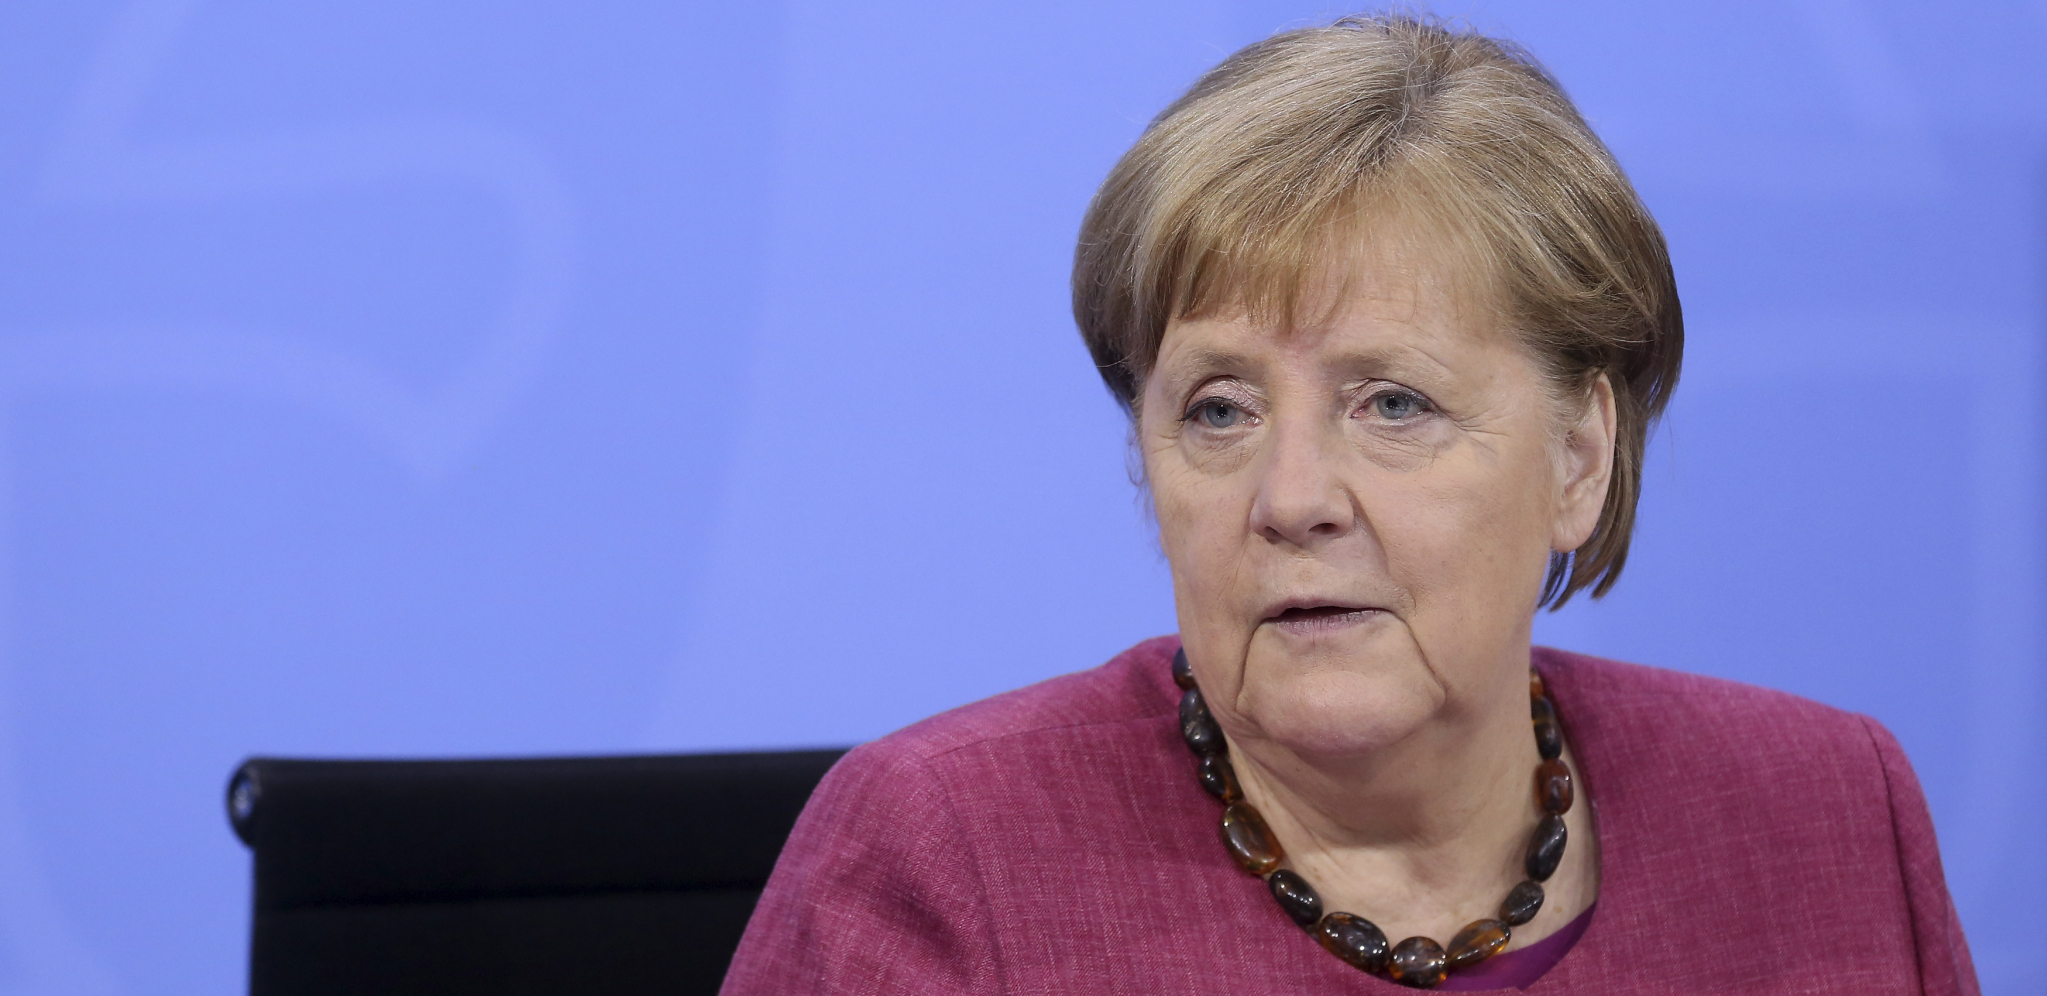 POPULARNOST JOJ RASTE Merkelova i u penziji omiljena nemačka političarka